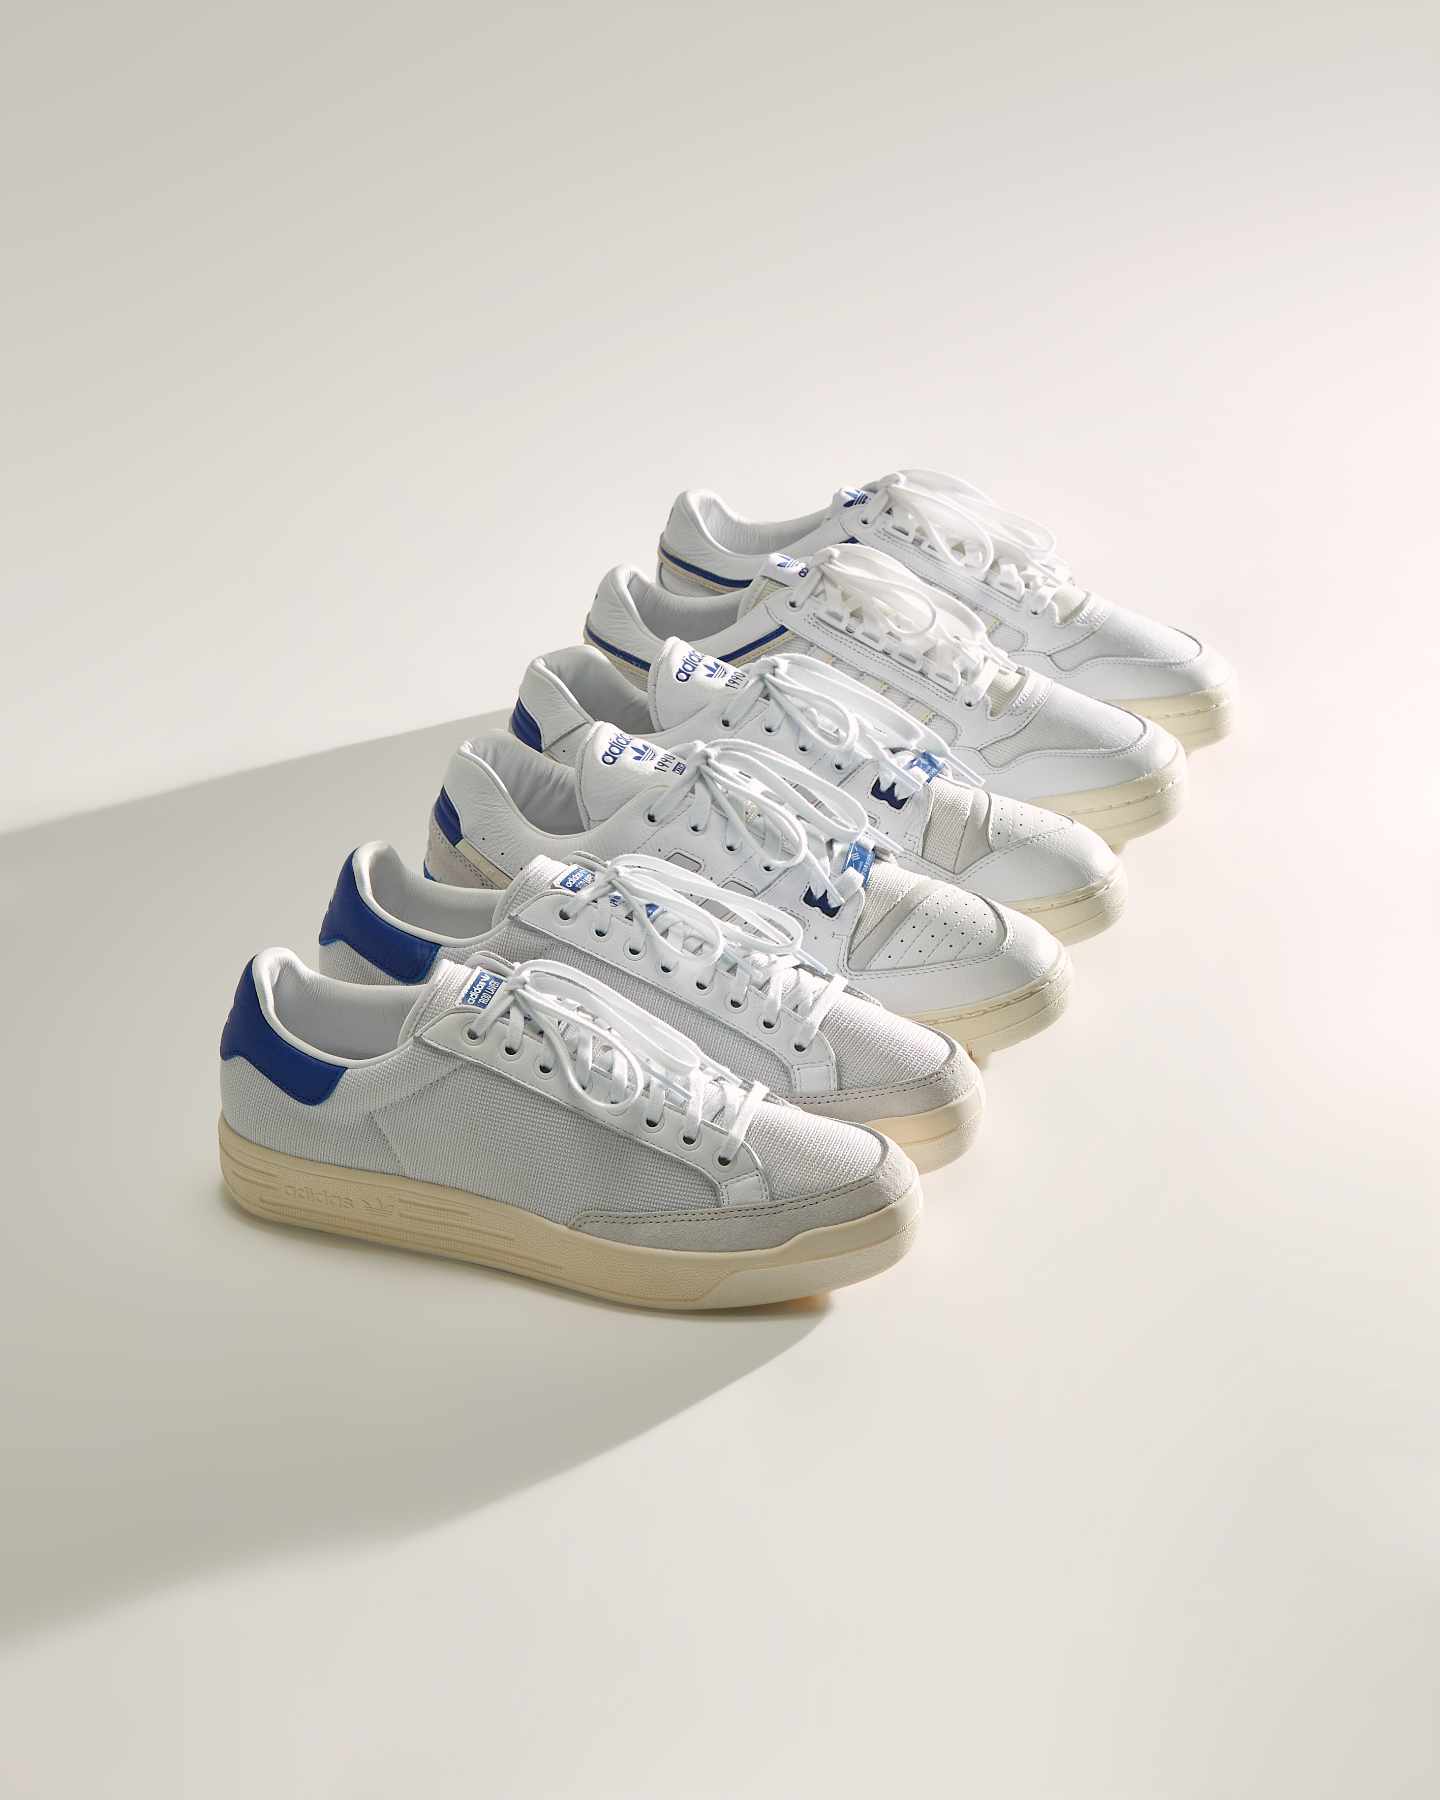 KITH & adidas' collaborative Rod Laver, IL Comp, and Torsion Edberg sneakers